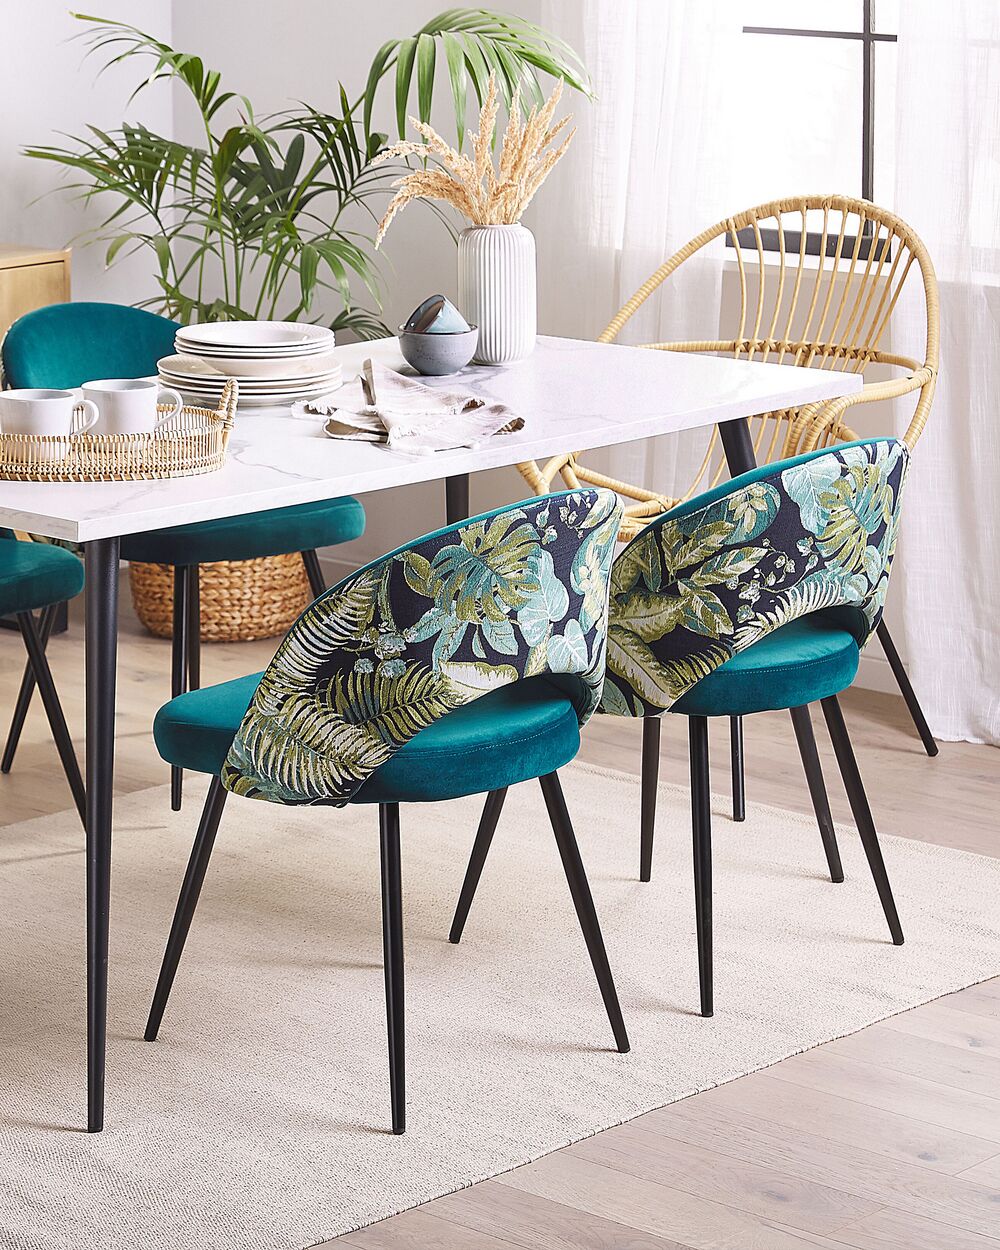 Cucina moderna con tavolo in legno e sedie blu